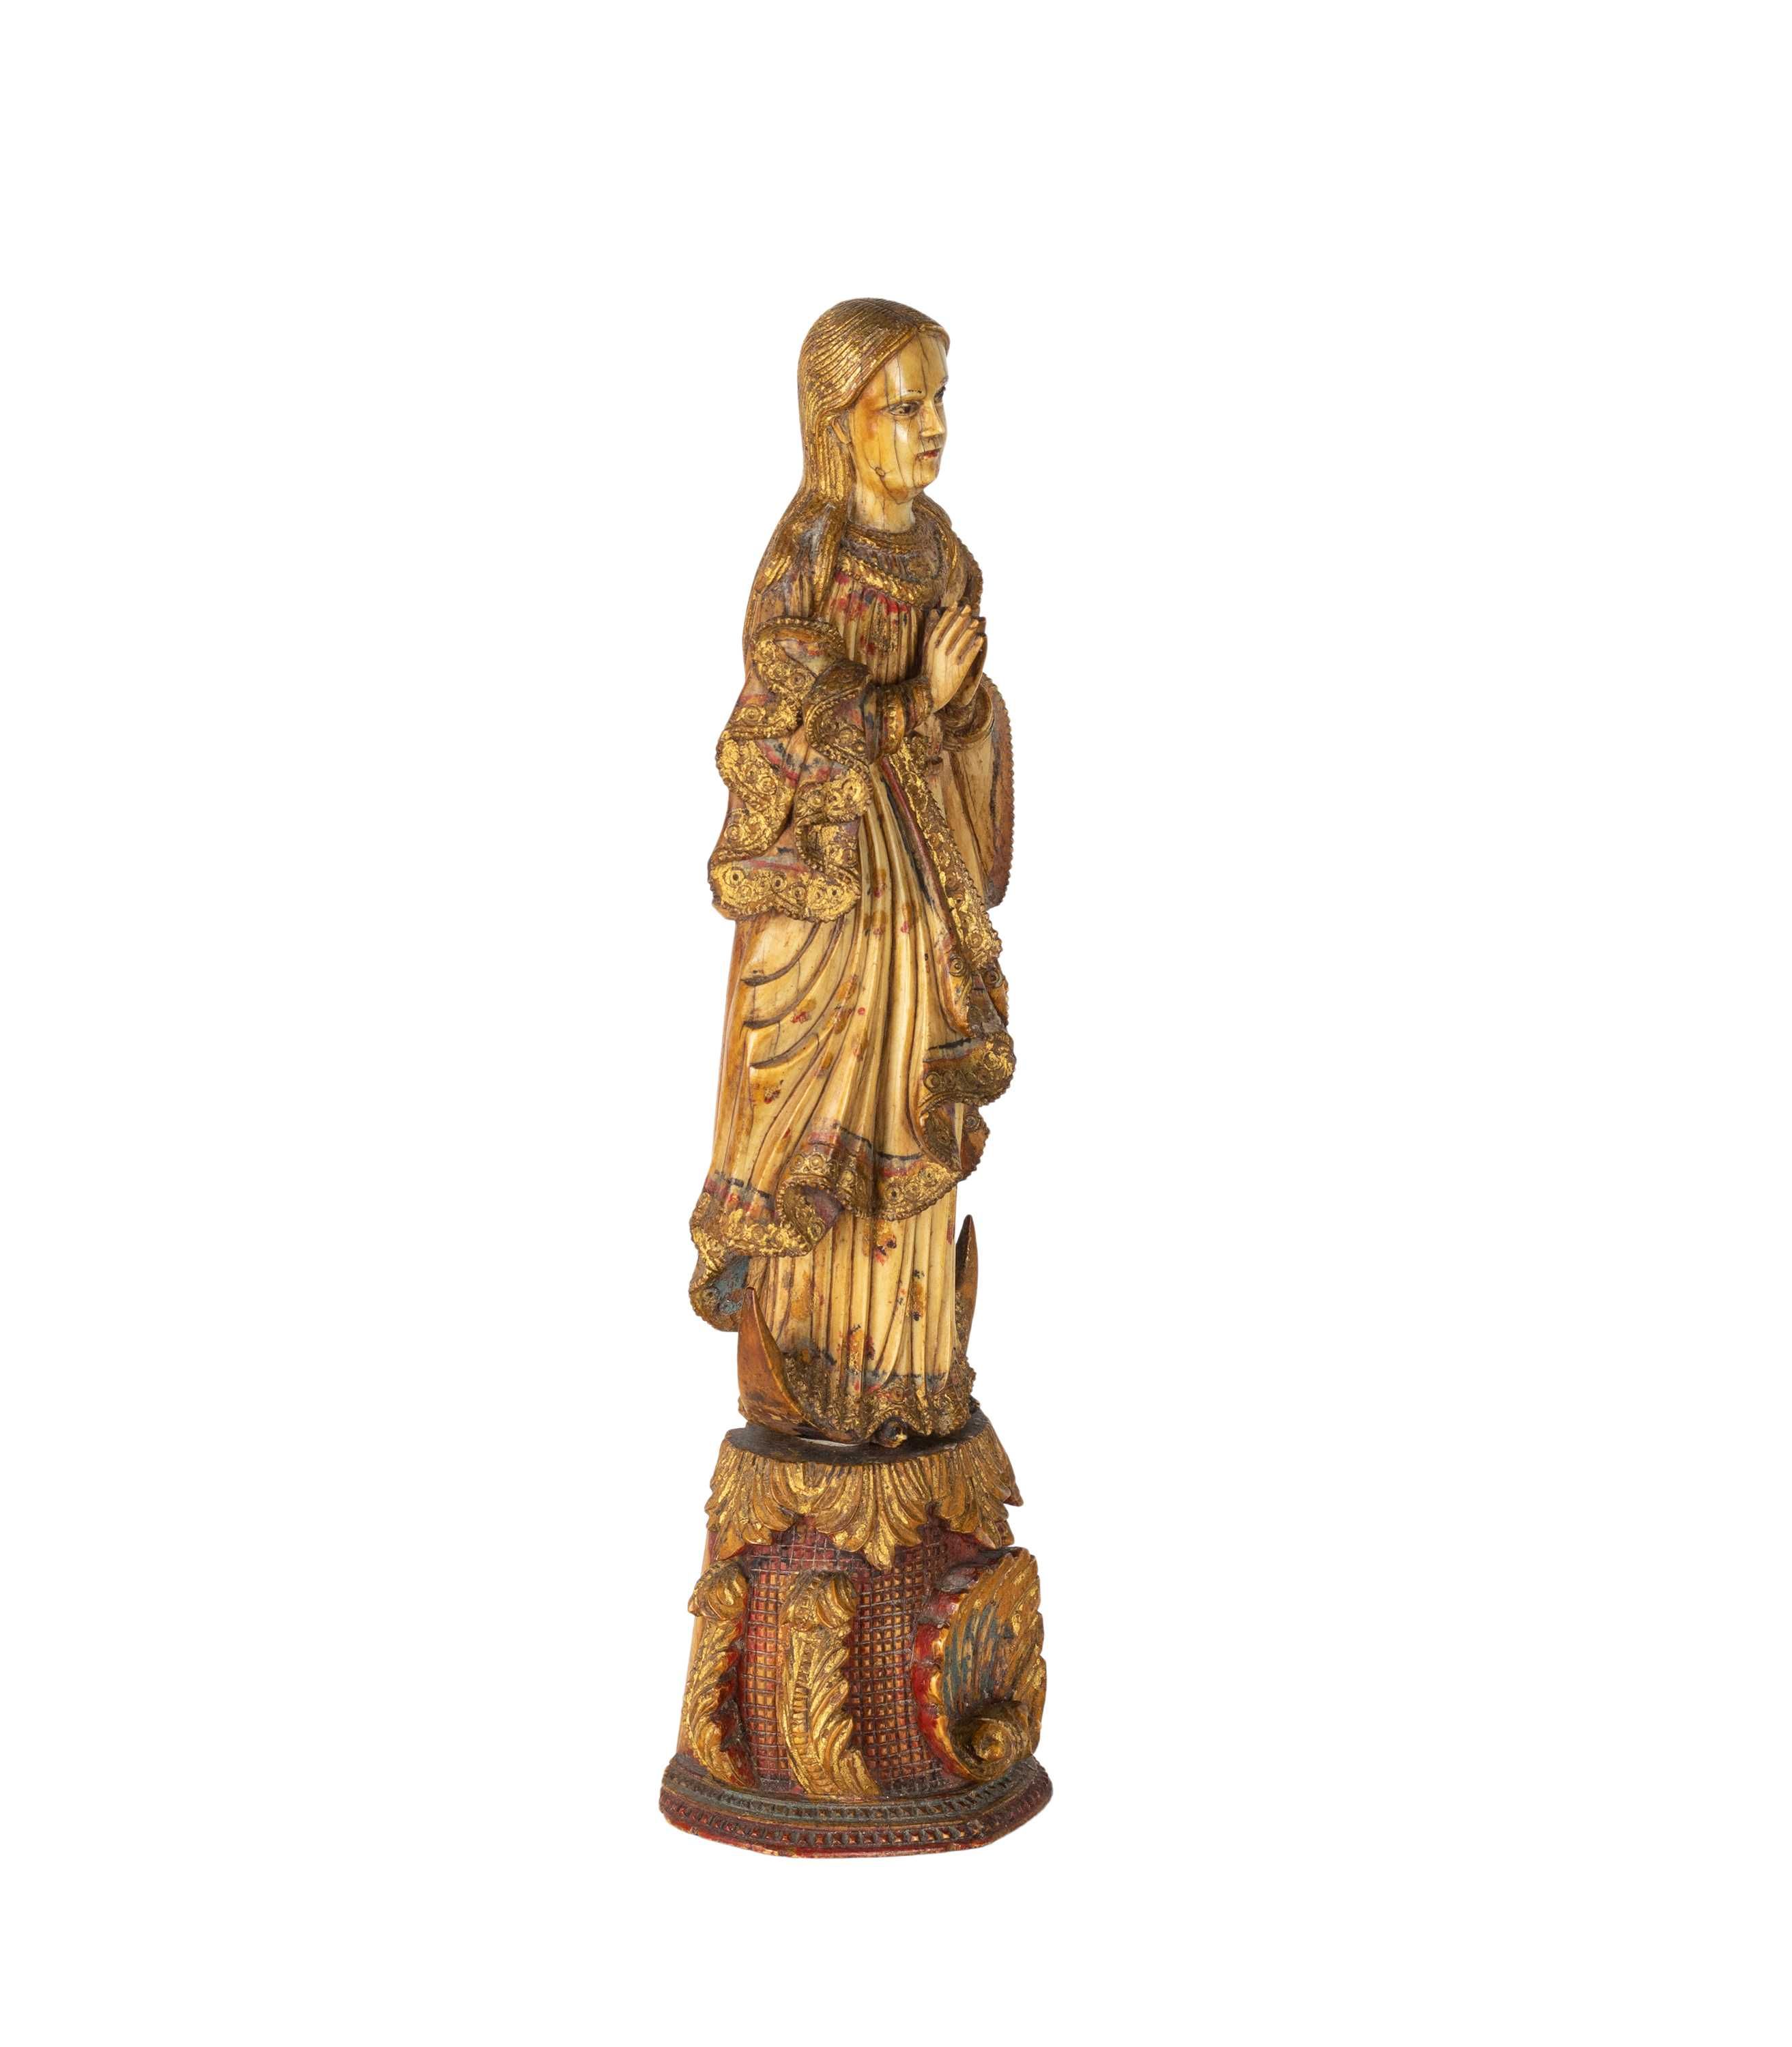 Escultura Nossa Senhora estilo indo português século XVII